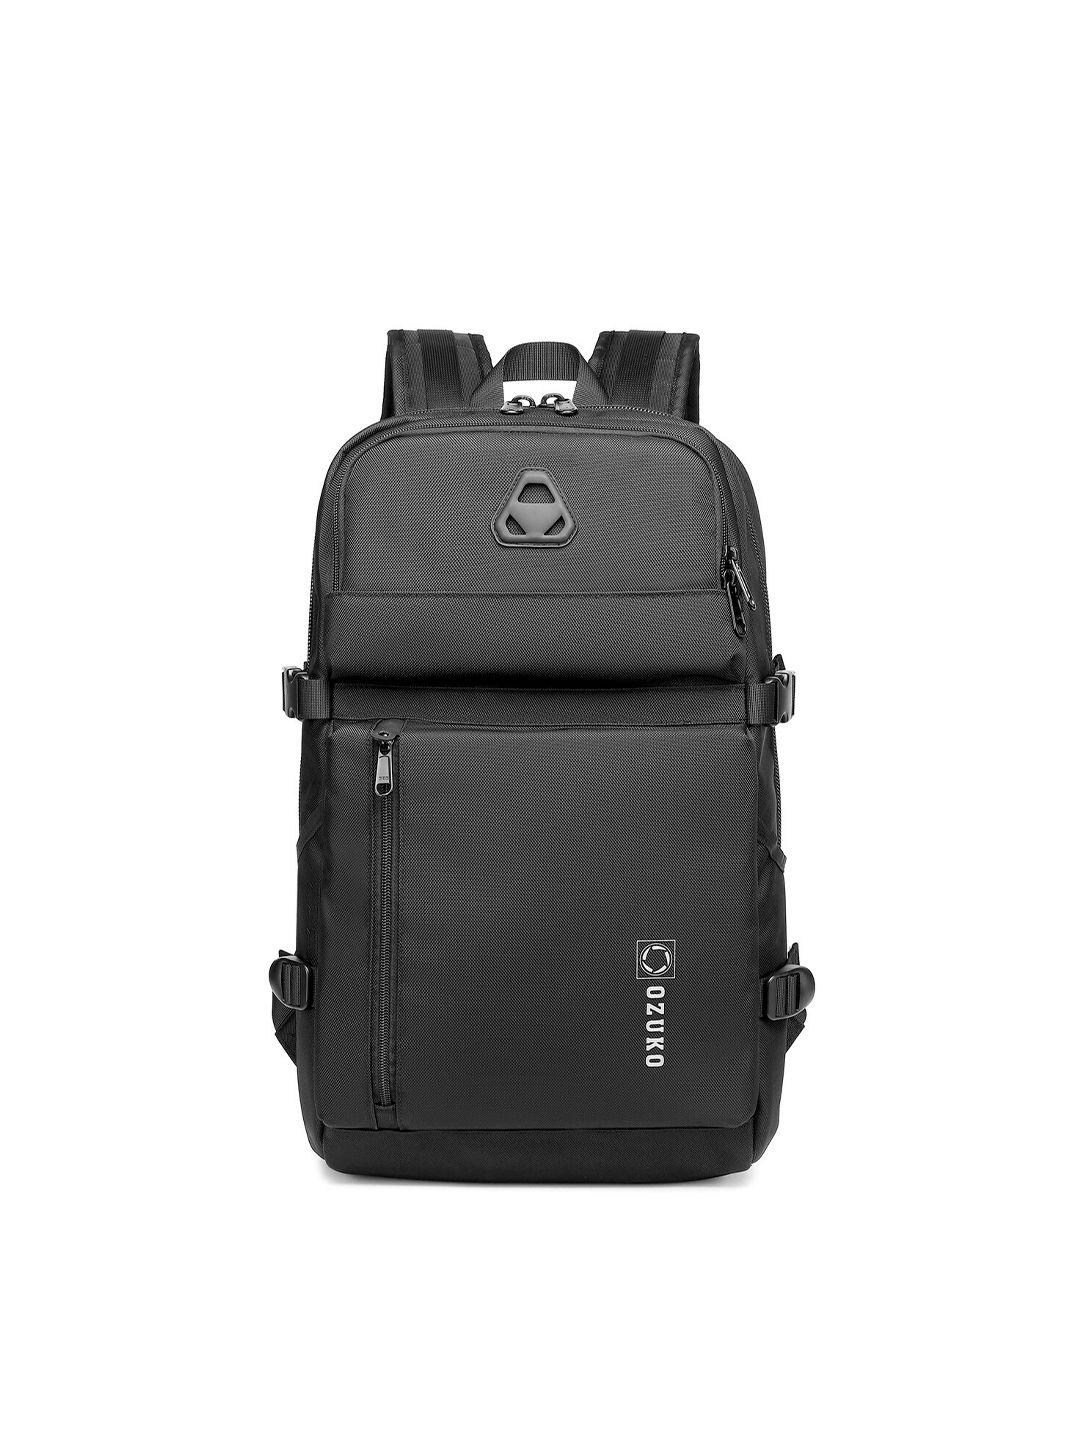 ozuko eco nomad soft one size backpack